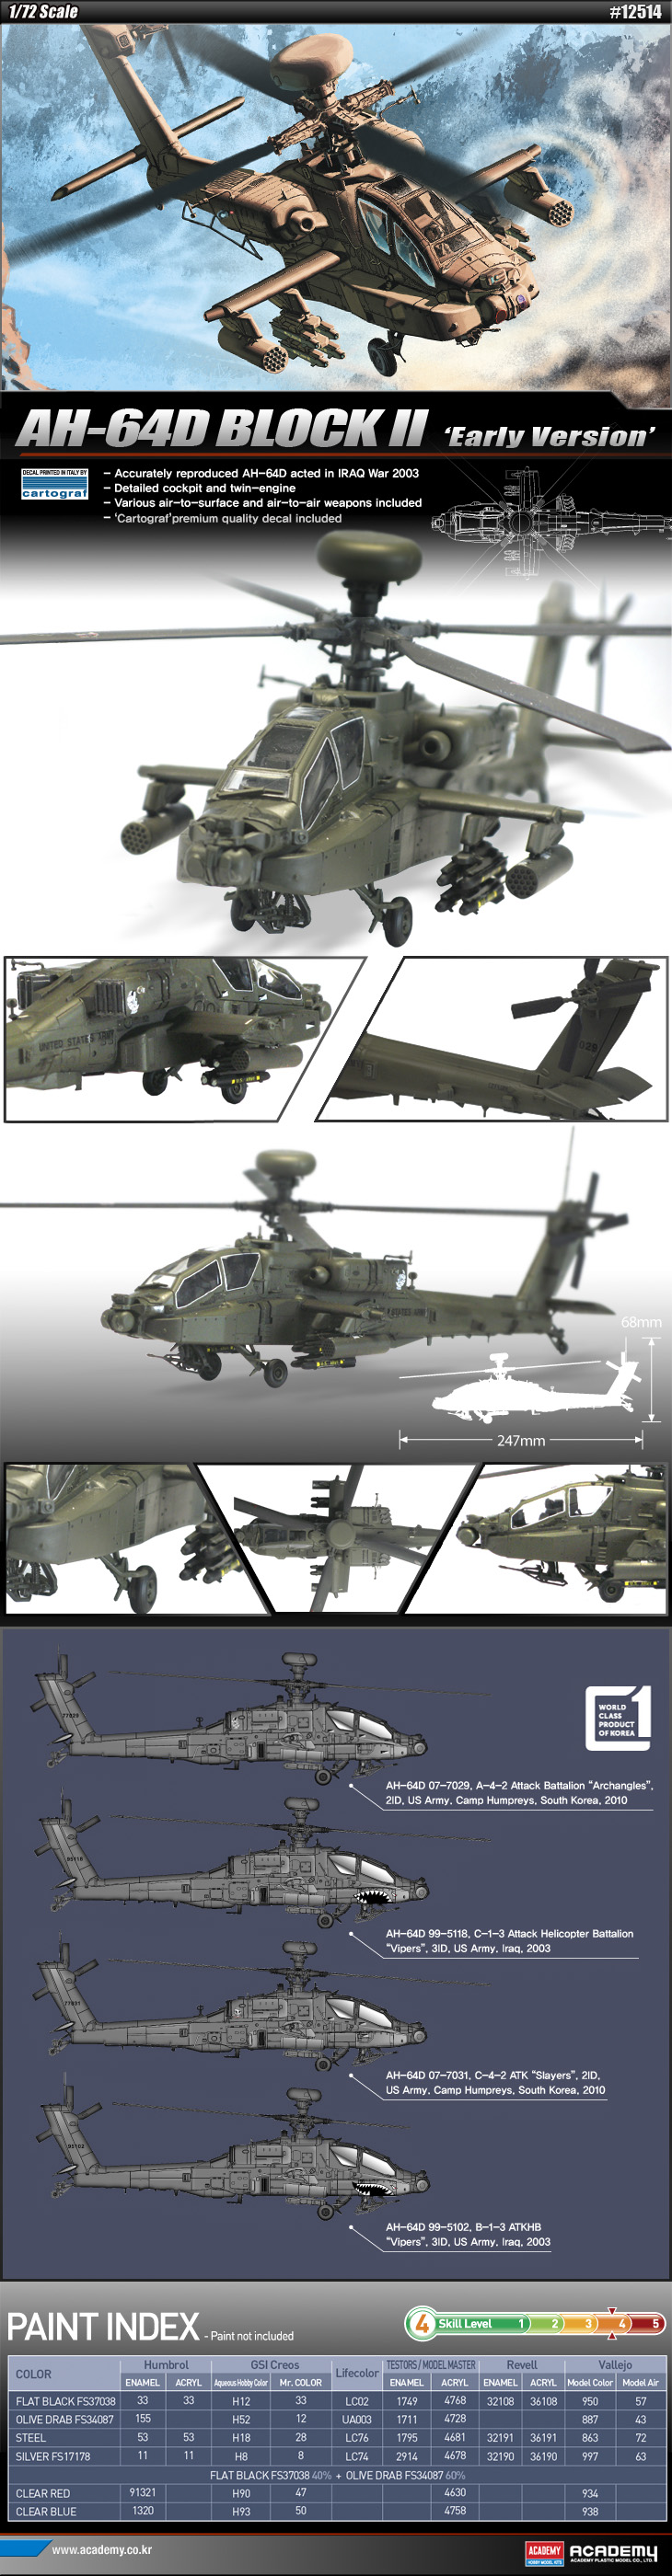 12514-AH-64D_webpage_170134.jpg